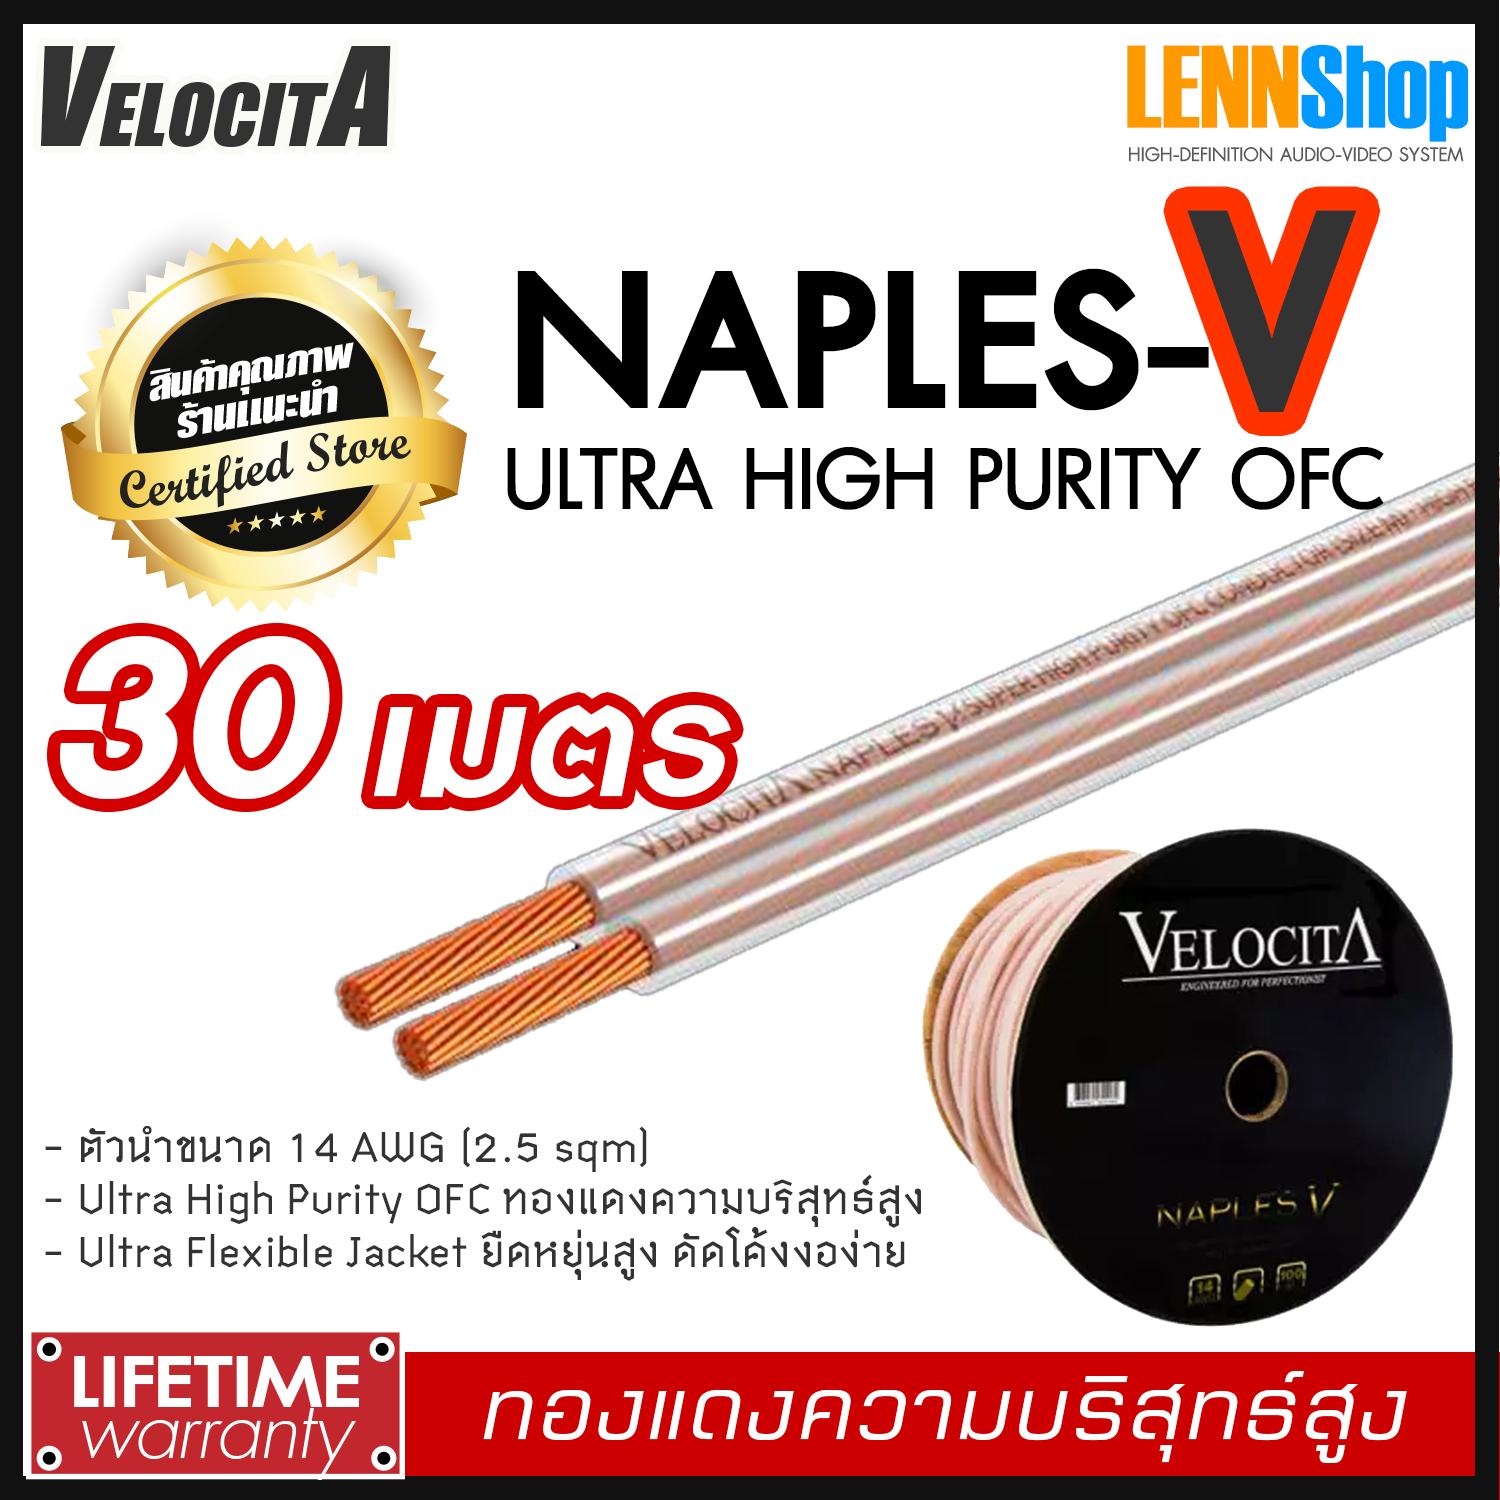 VELOCITA : NAPLES V สายลำโพง Ultra High Purity OFC ความบริสุทธ์สูง ความยาว ตั้งแต่ 1 - 100 เมตร เลือกได้หลายขนาด สินค้าของแท้ 100% จากตัวแทนจำหน่ายอย่างเป็นทางการ จำหน่ายโดย LENNSHOP / Velocita Naple V / naple V สี 30m สี 30m